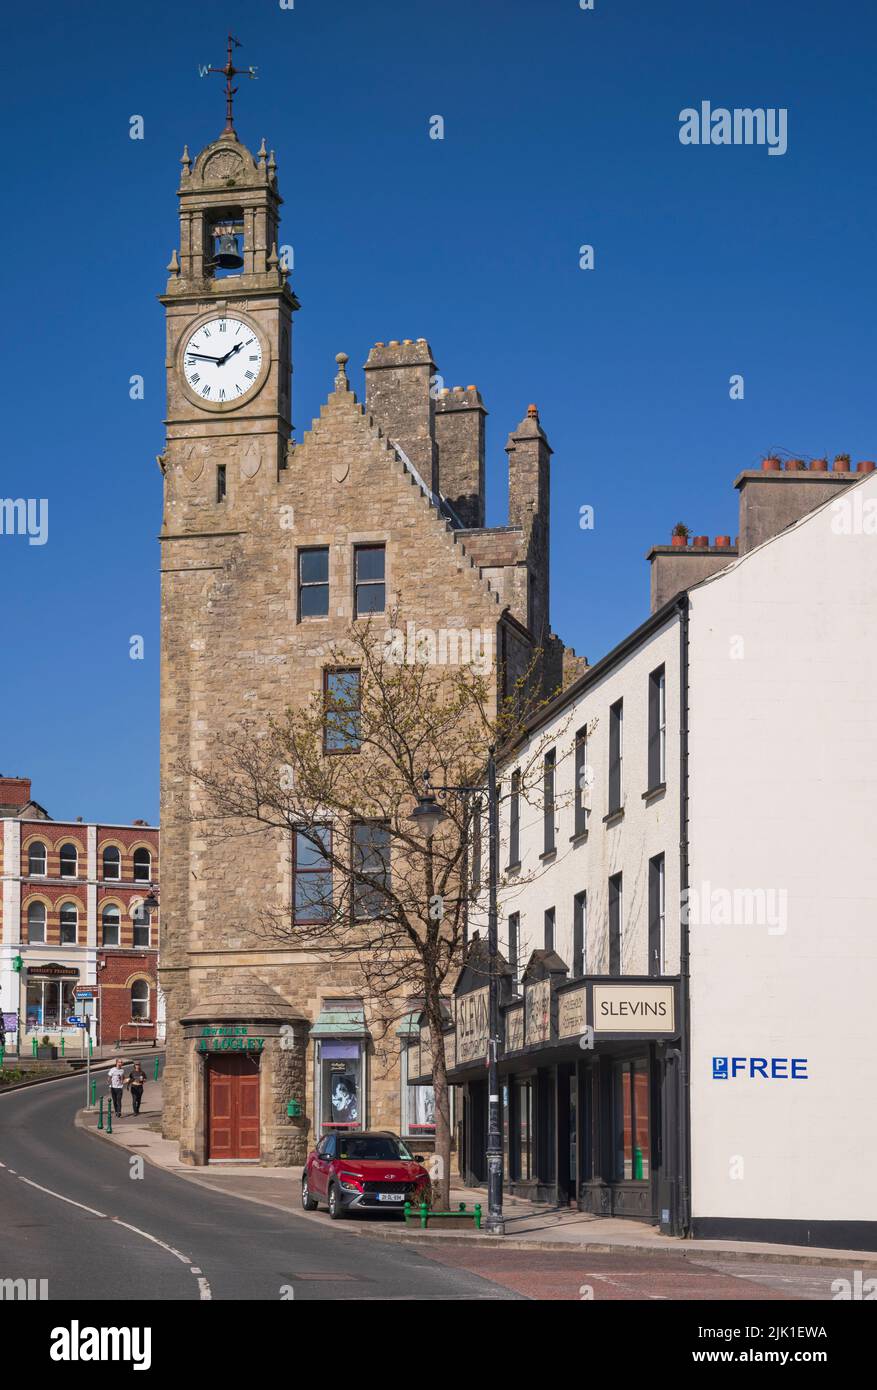 Irlanda, Condado de Donegal, Ballyshannon, el reloj de la ciudad, encaramado en la parte superior de un edificio baronial de estilo escocés construido en 1878, el reloj de dos pisos y el campanario con gables escalonadas de cuervo fue construido para el Belfast Bank que había comenzado los negocios en la ciudad en 1869. Foto de stock